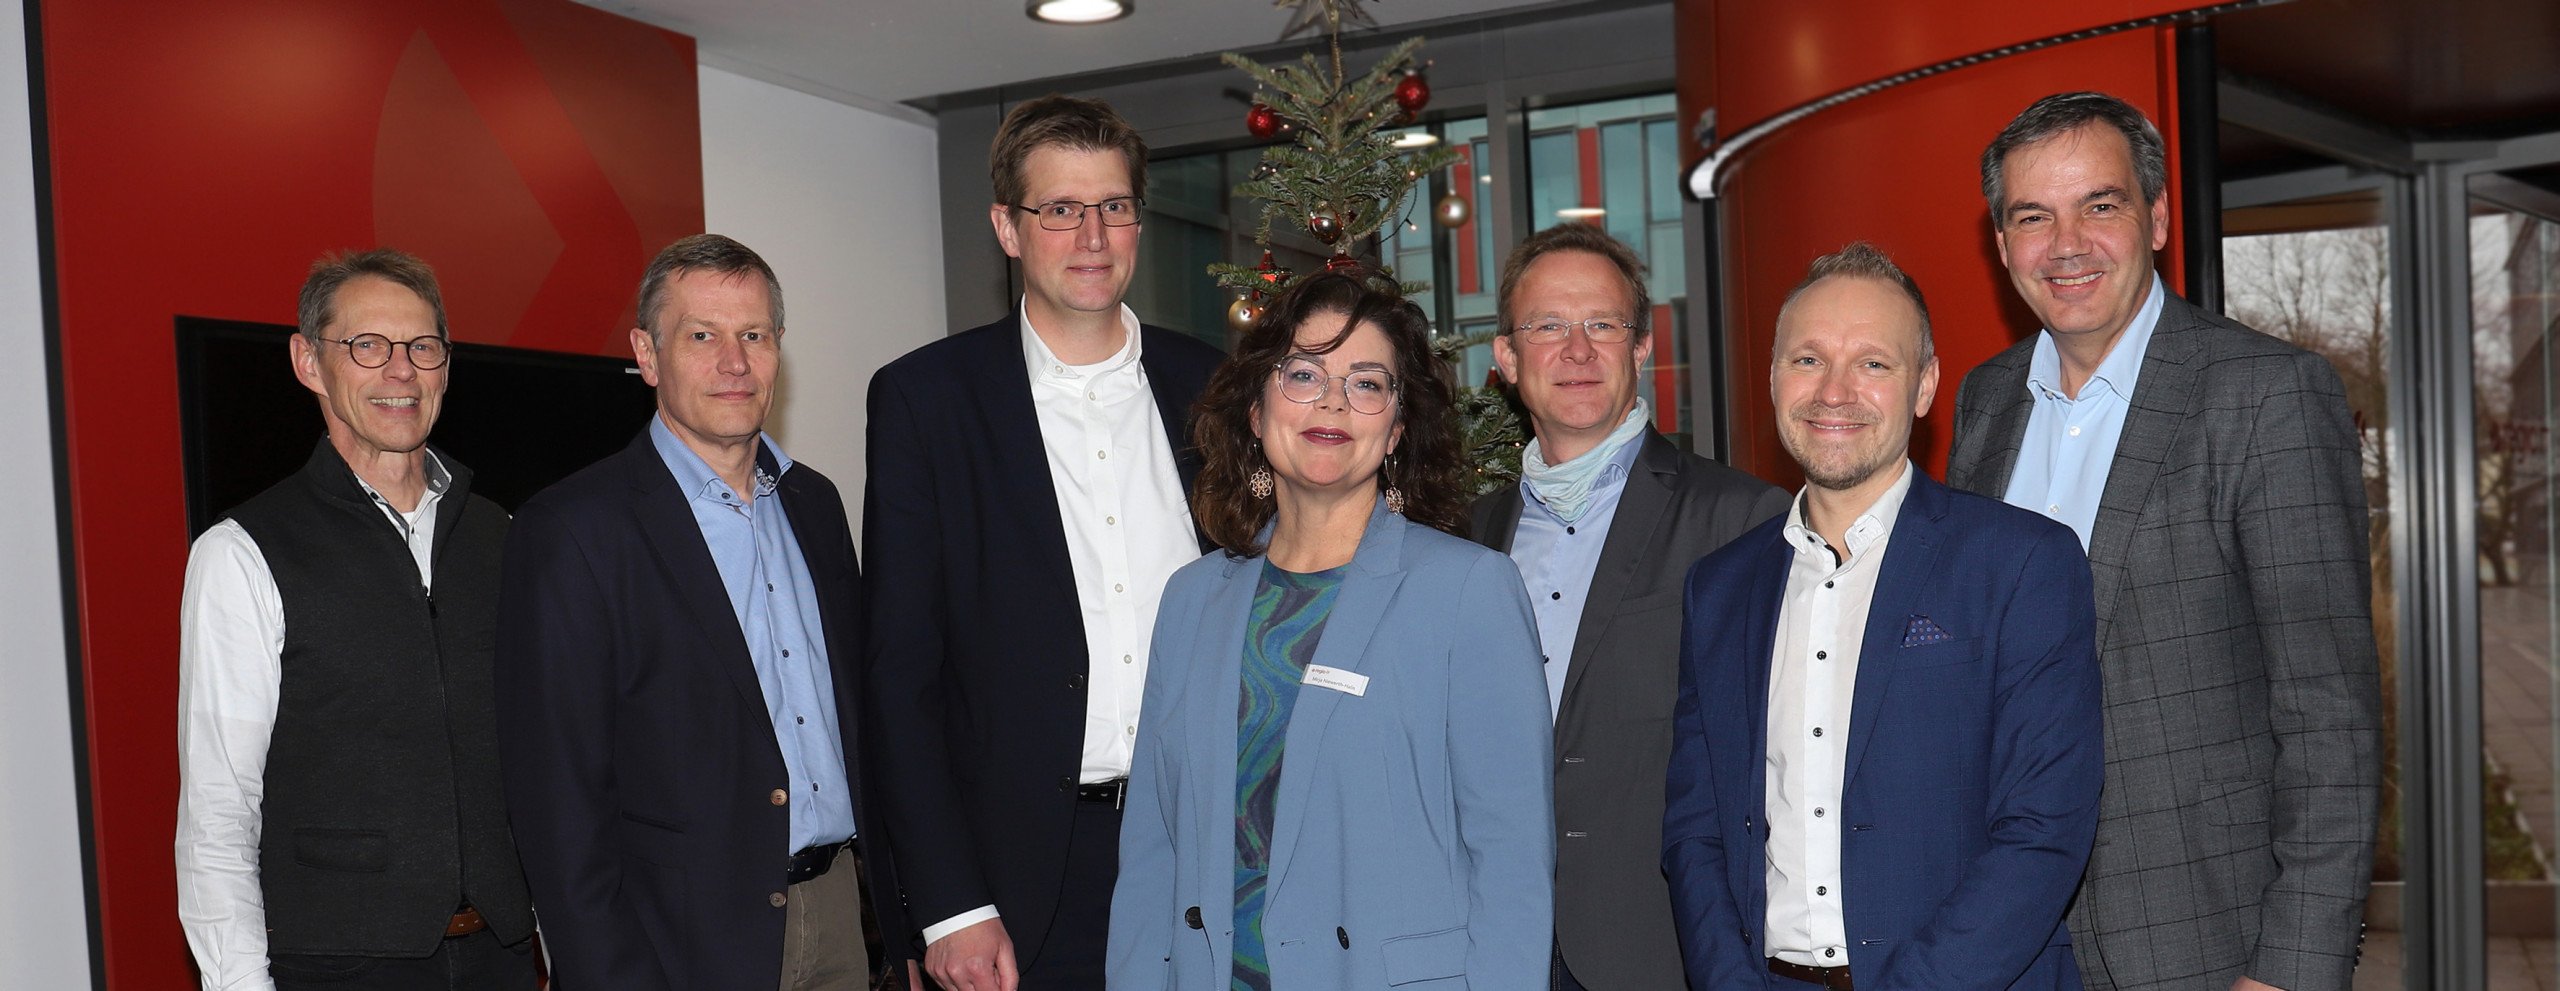 Energieeffizienz im Fokus: Bundestagsabgeordneter Maik Außendorf besucht auf Einladung von VITAKO modernes Rechenzentrum von regio iT